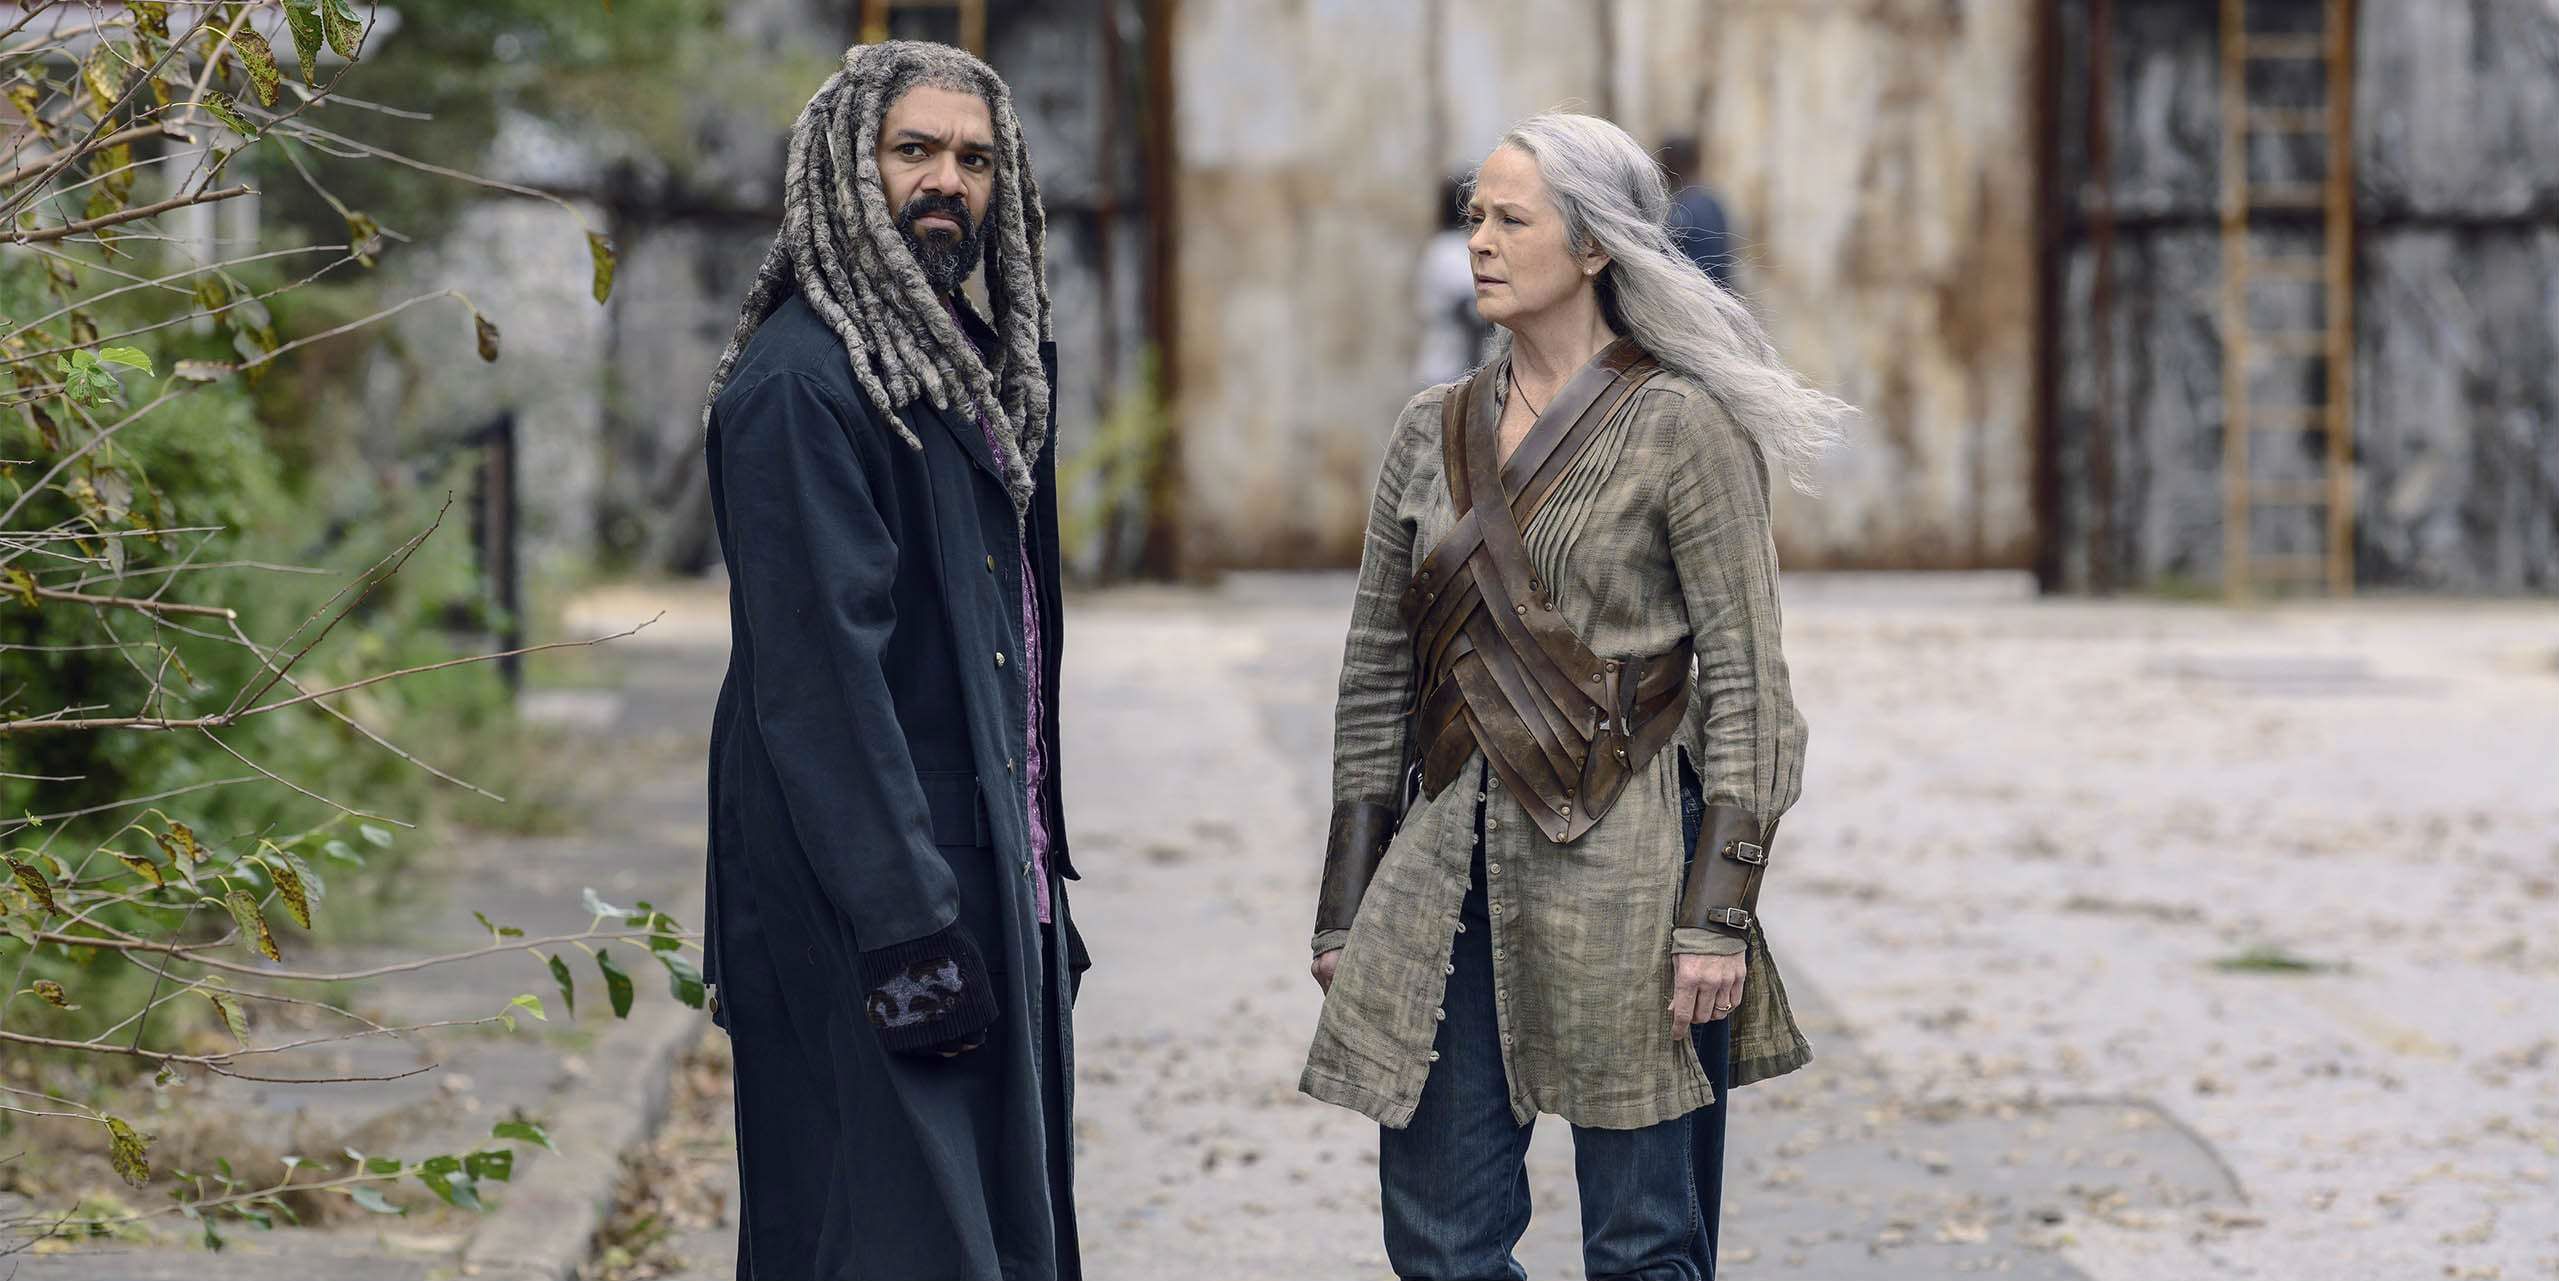 Ezekiel and Carol break up on The Walking Dead season 9